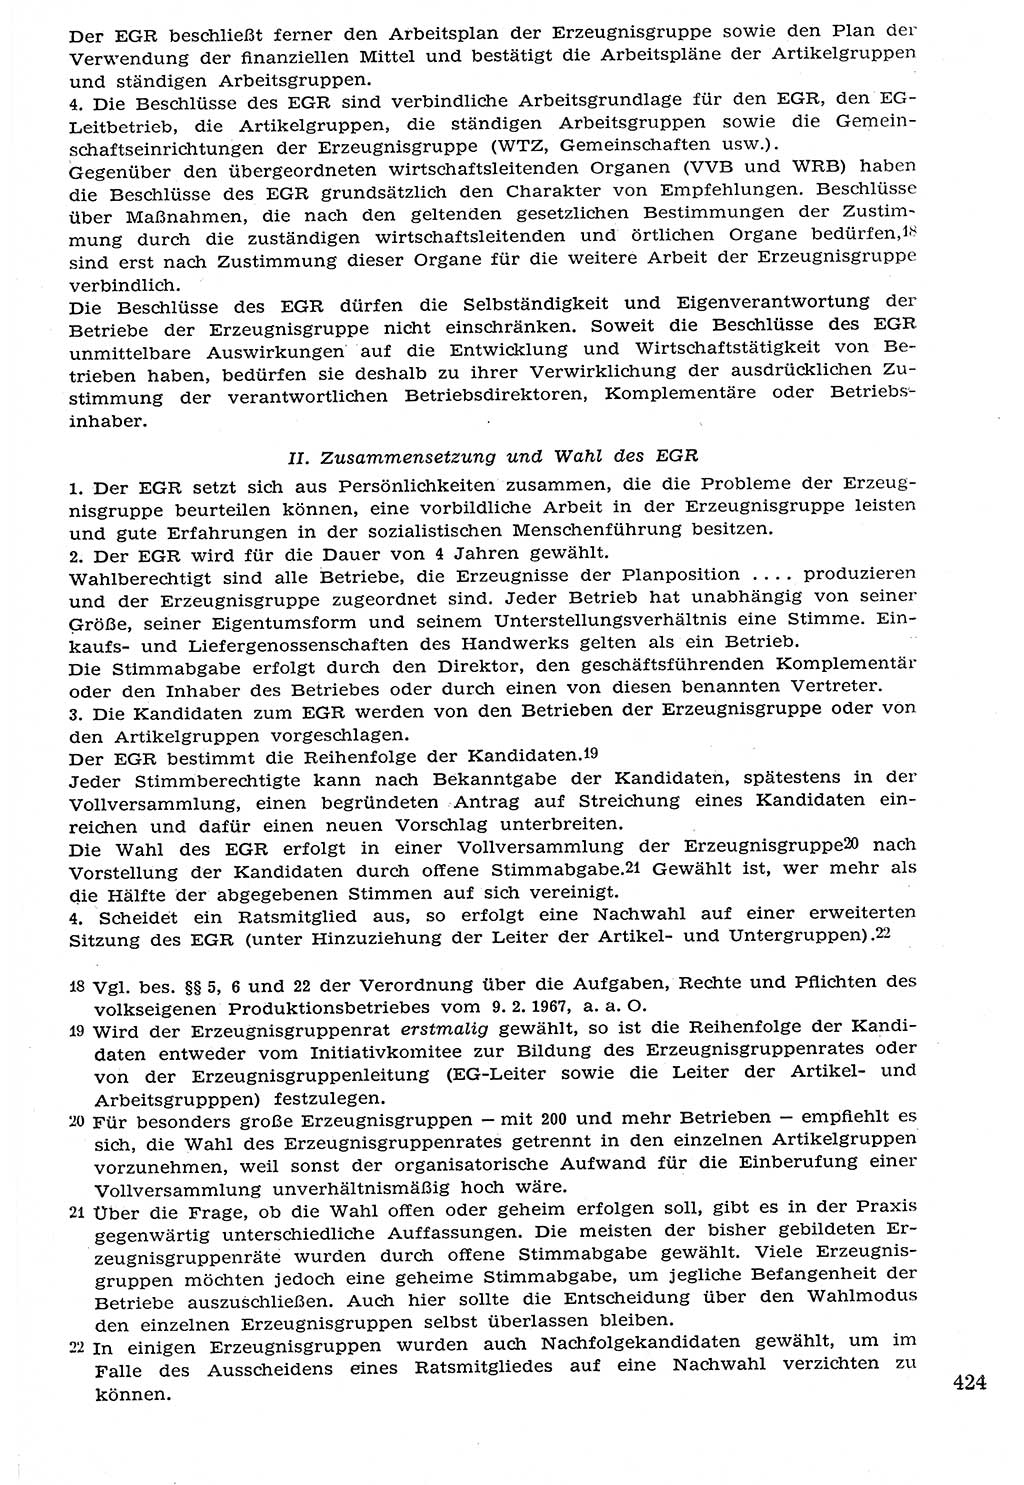 Staat und Recht (StuR), 17. Jahrgang [Deutsche Demokratische Republik (DDR)] 1968, Seite 424 (StuR DDR 1968, S. 424)